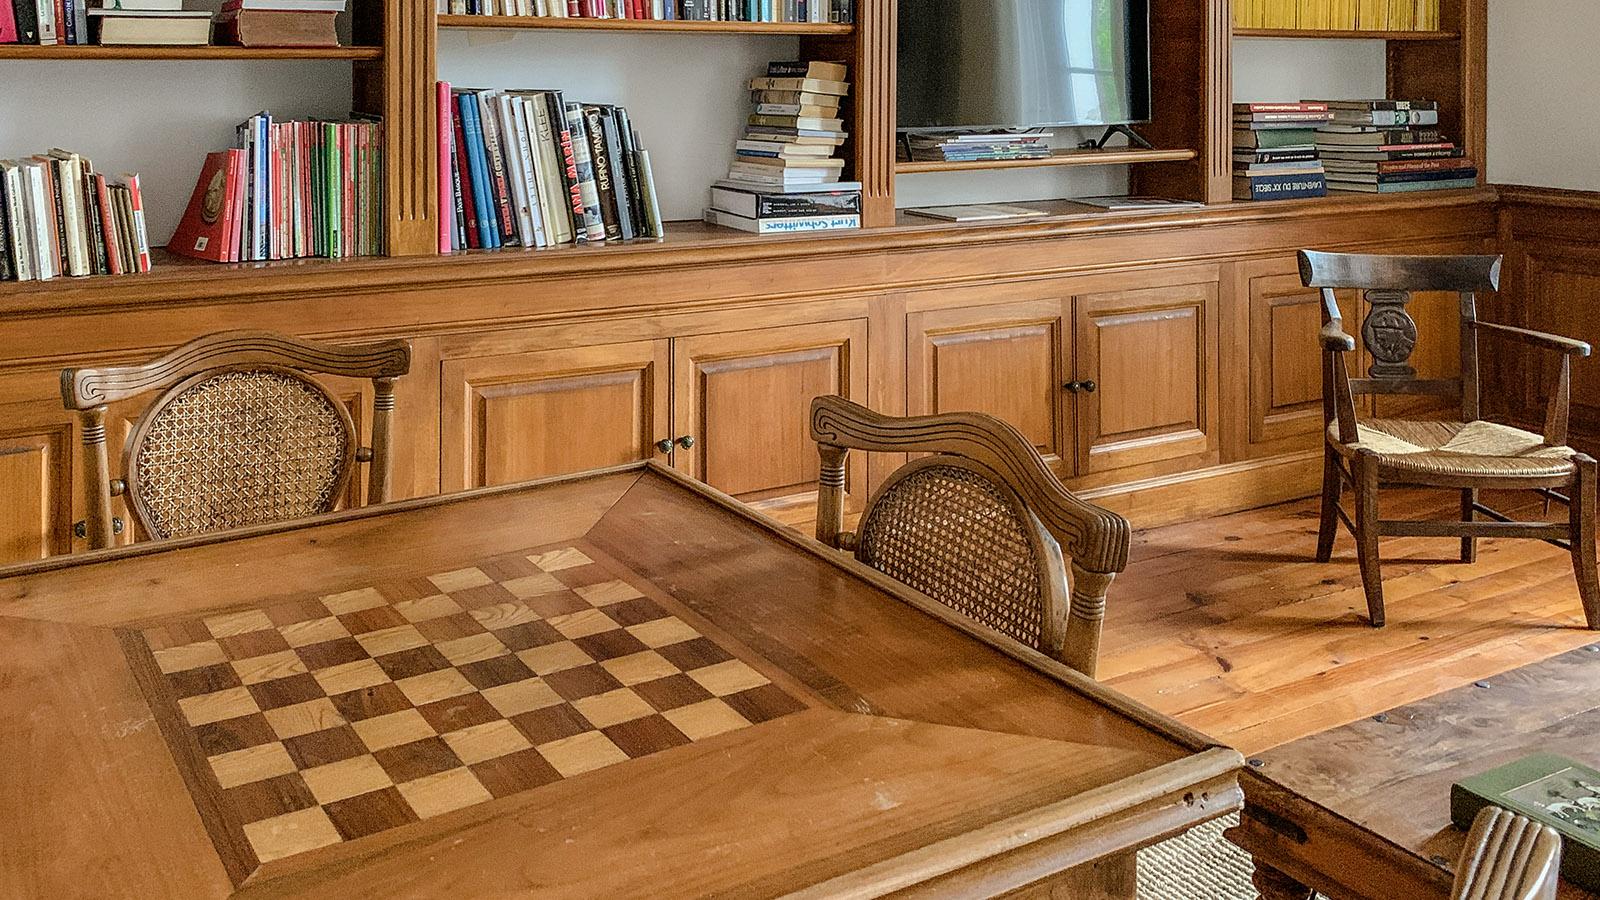 Das Schach- und Damespielfeld ist in einen der Tische eingelassen. Foto: Hilke Maunder